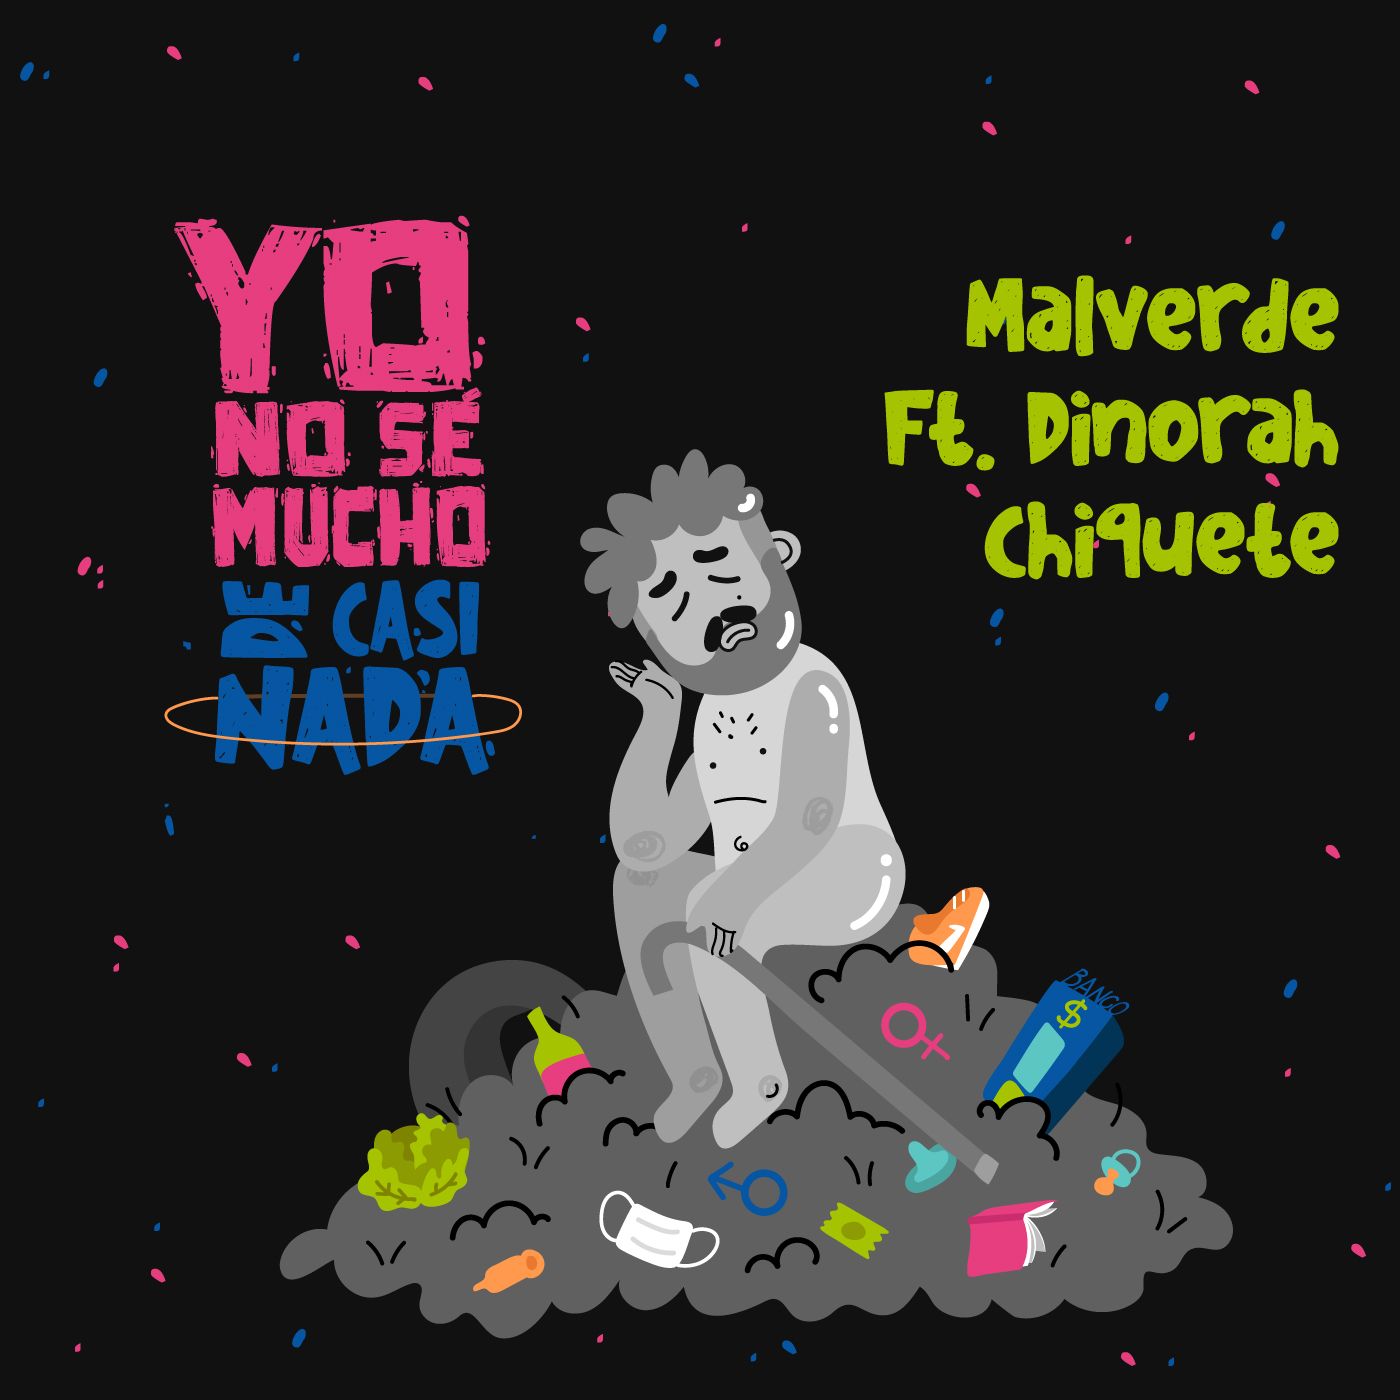 Yo No Sé Mucho de Casi Nada: Malverde ft. Dinorah Chiquete